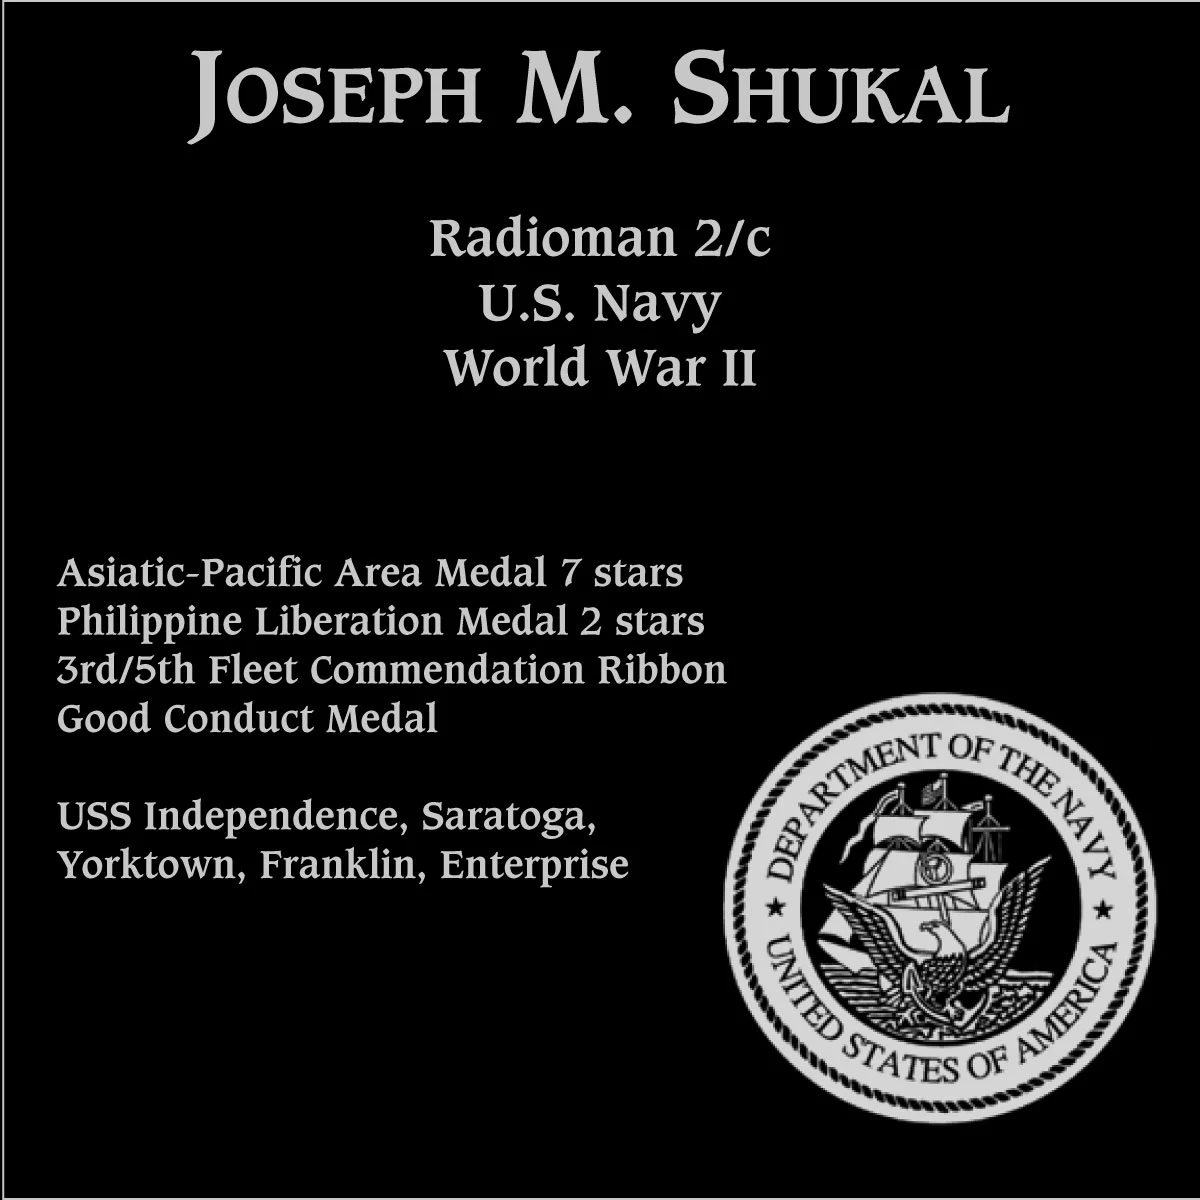 Joseph M. Shukal